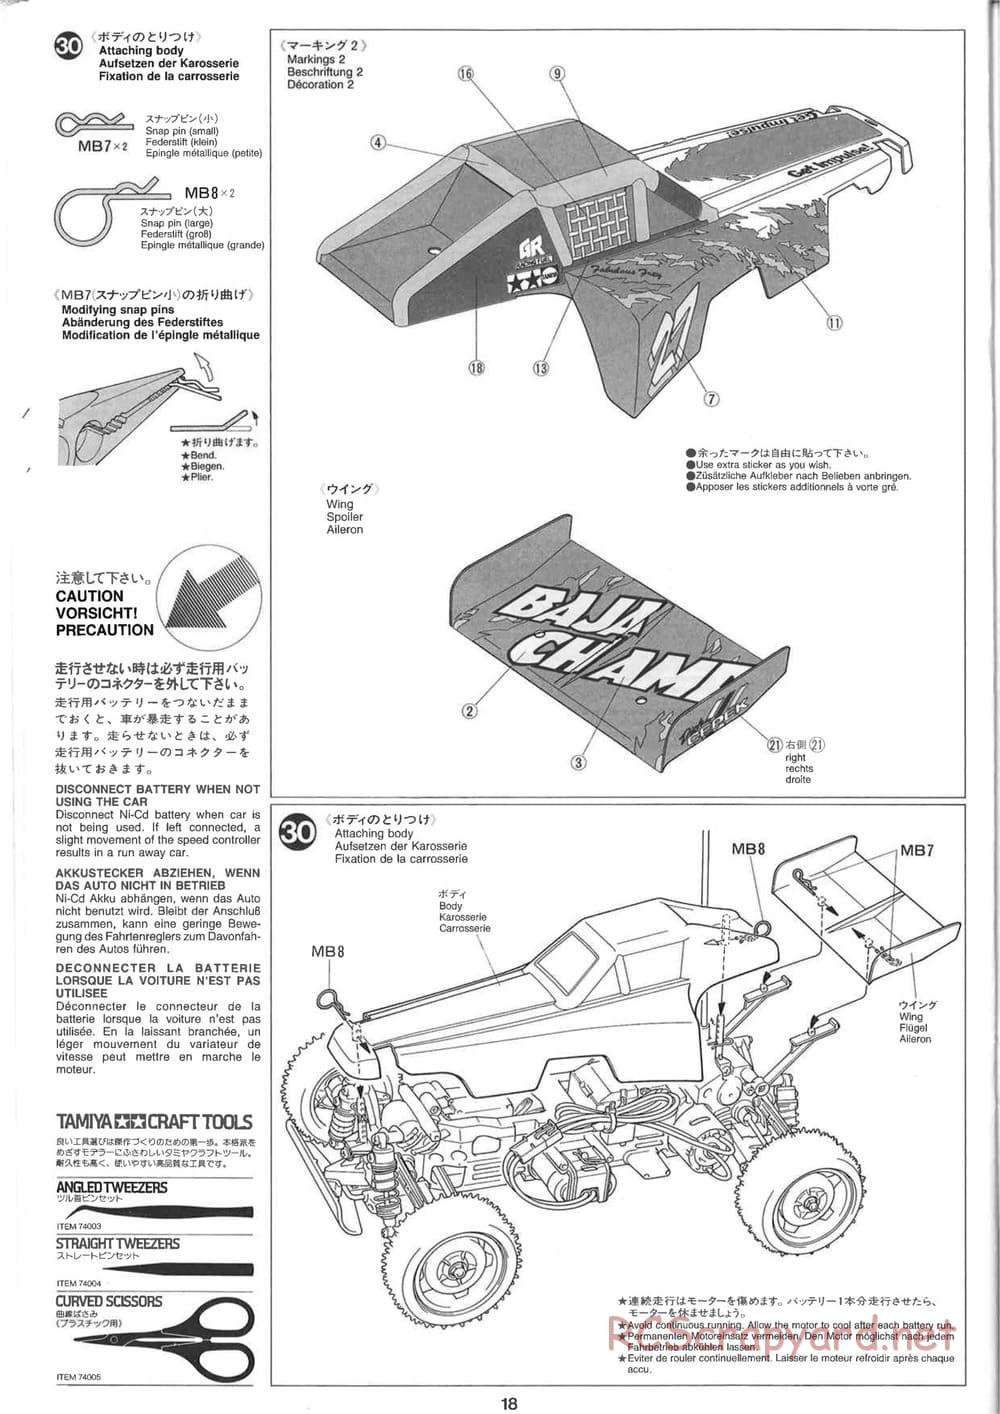 Tamiya - Baja Champ - TL-01B Chassis - Manual - Page 18